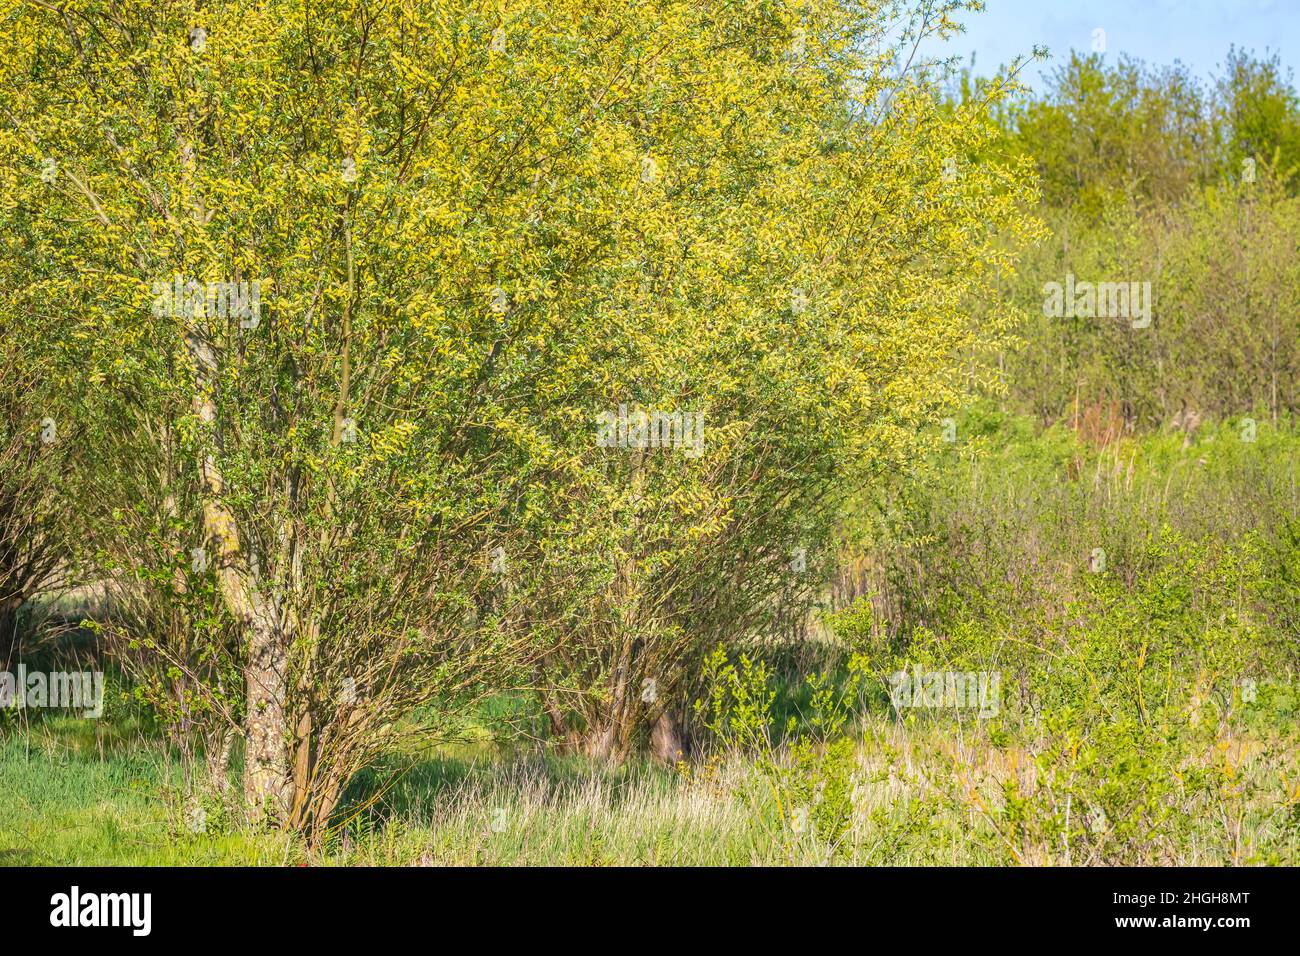 Salix alba, Weidenbaum im Frühling, Pollen und Kätzchen in der Nähe. Stockfoto